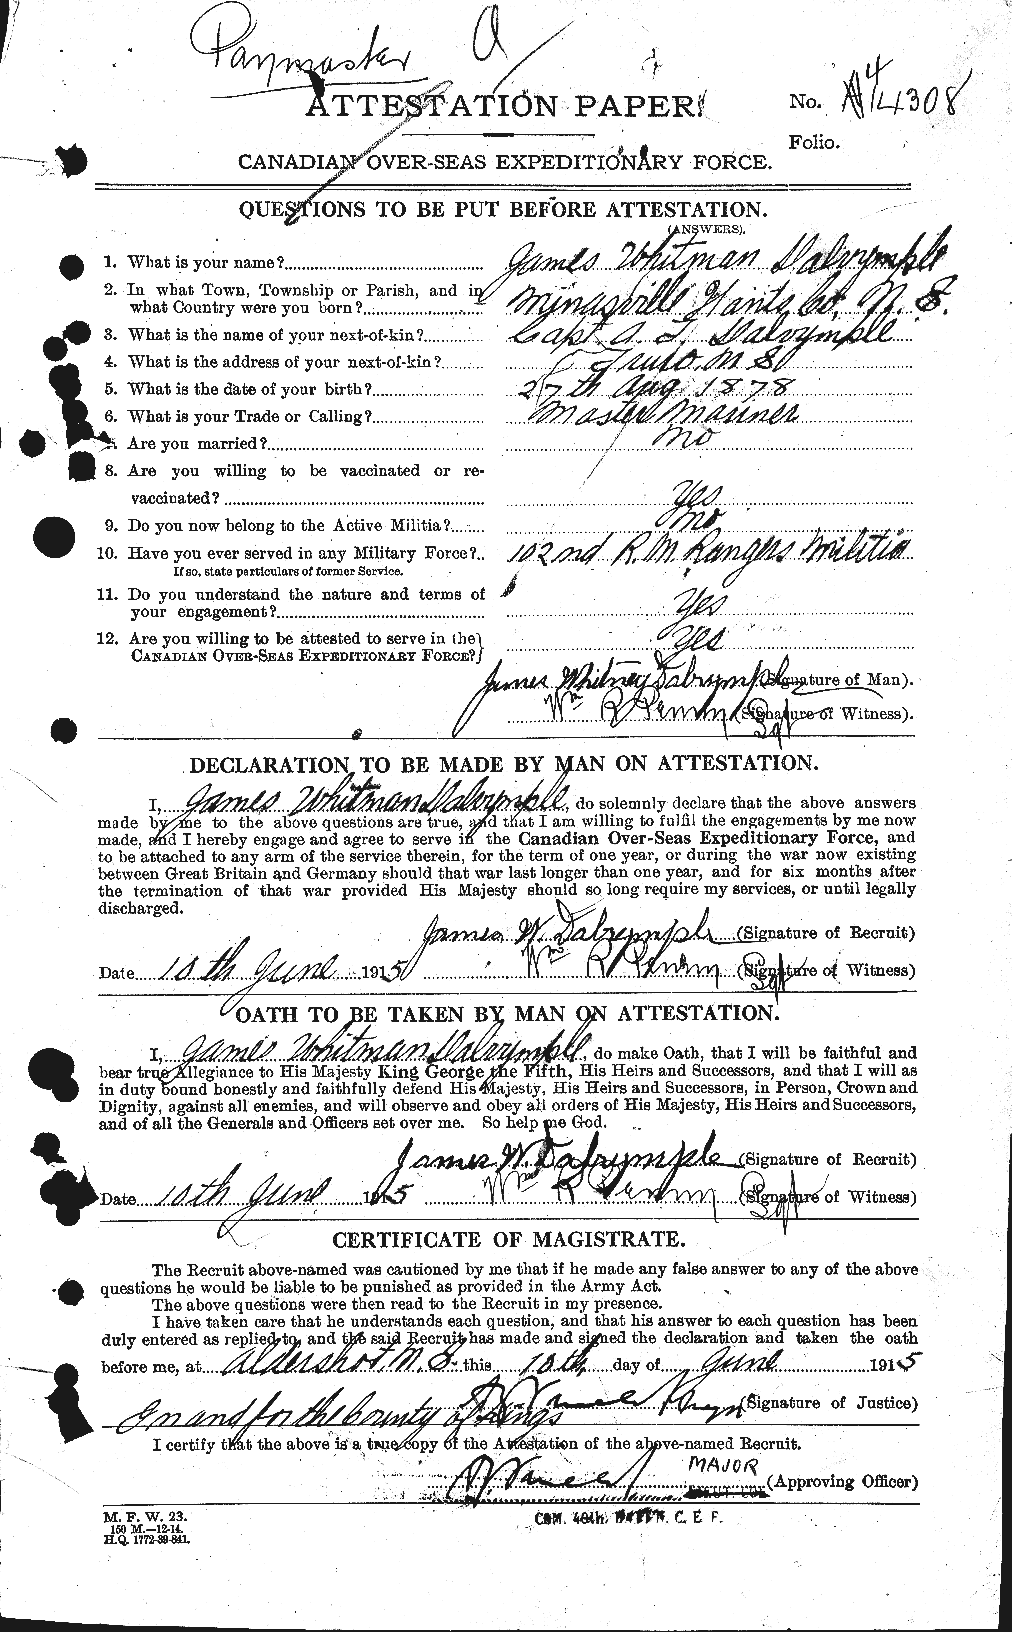 Dossiers du Personnel de la Première Guerre mondiale - CEC 277632a